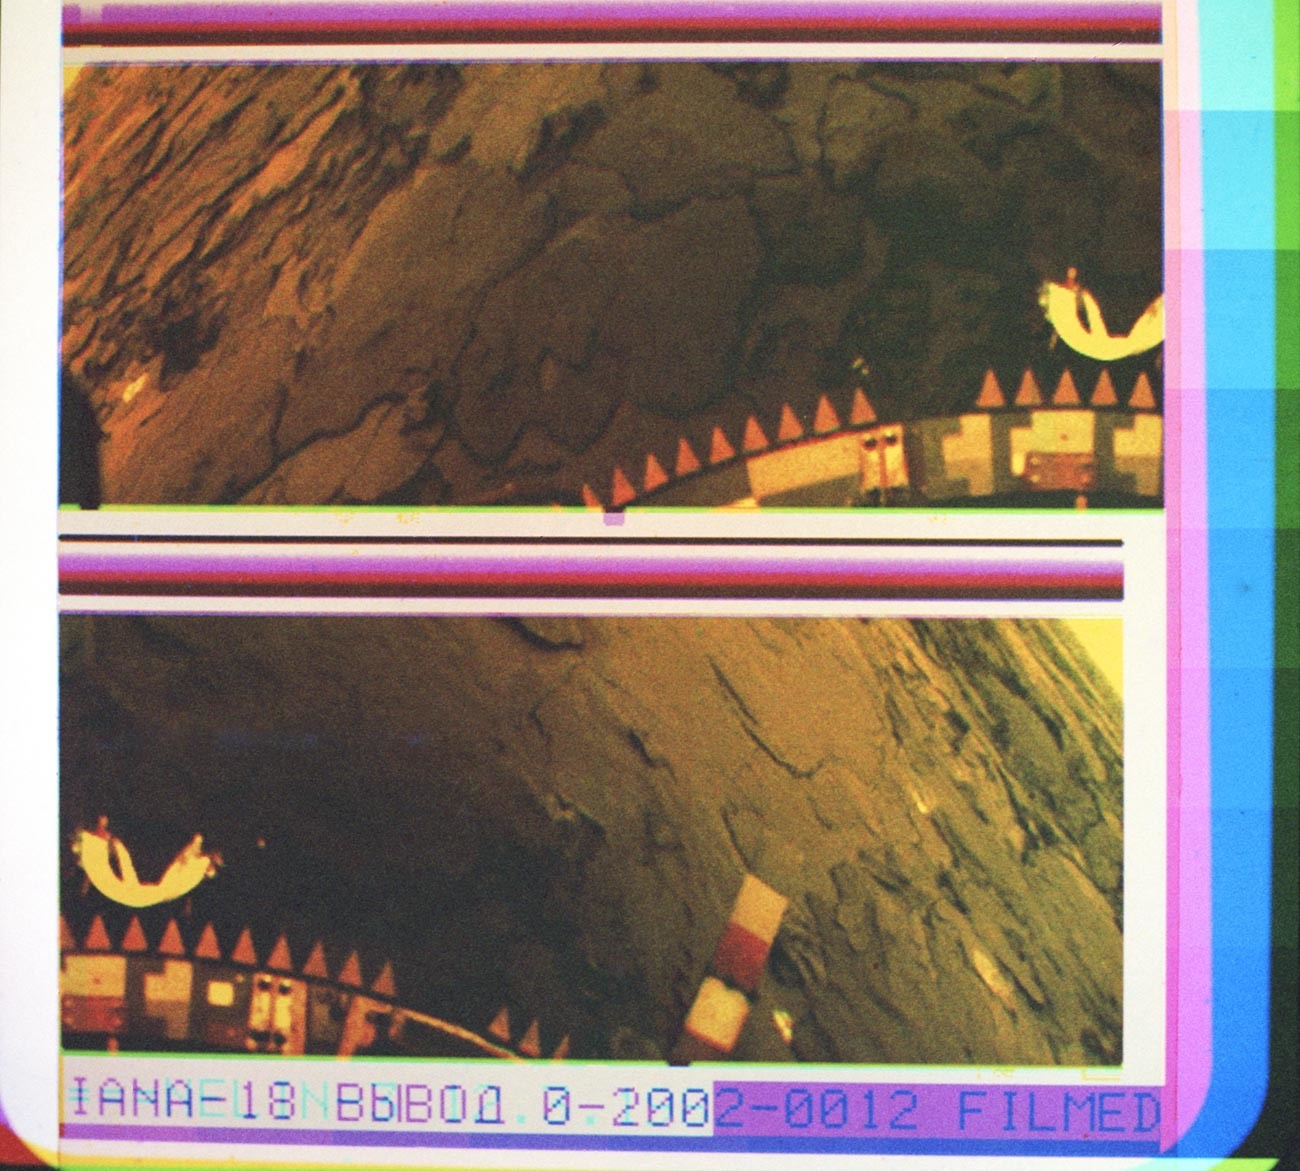 Panoramska fotografija u boji površine Venere, poslana sa sonde 